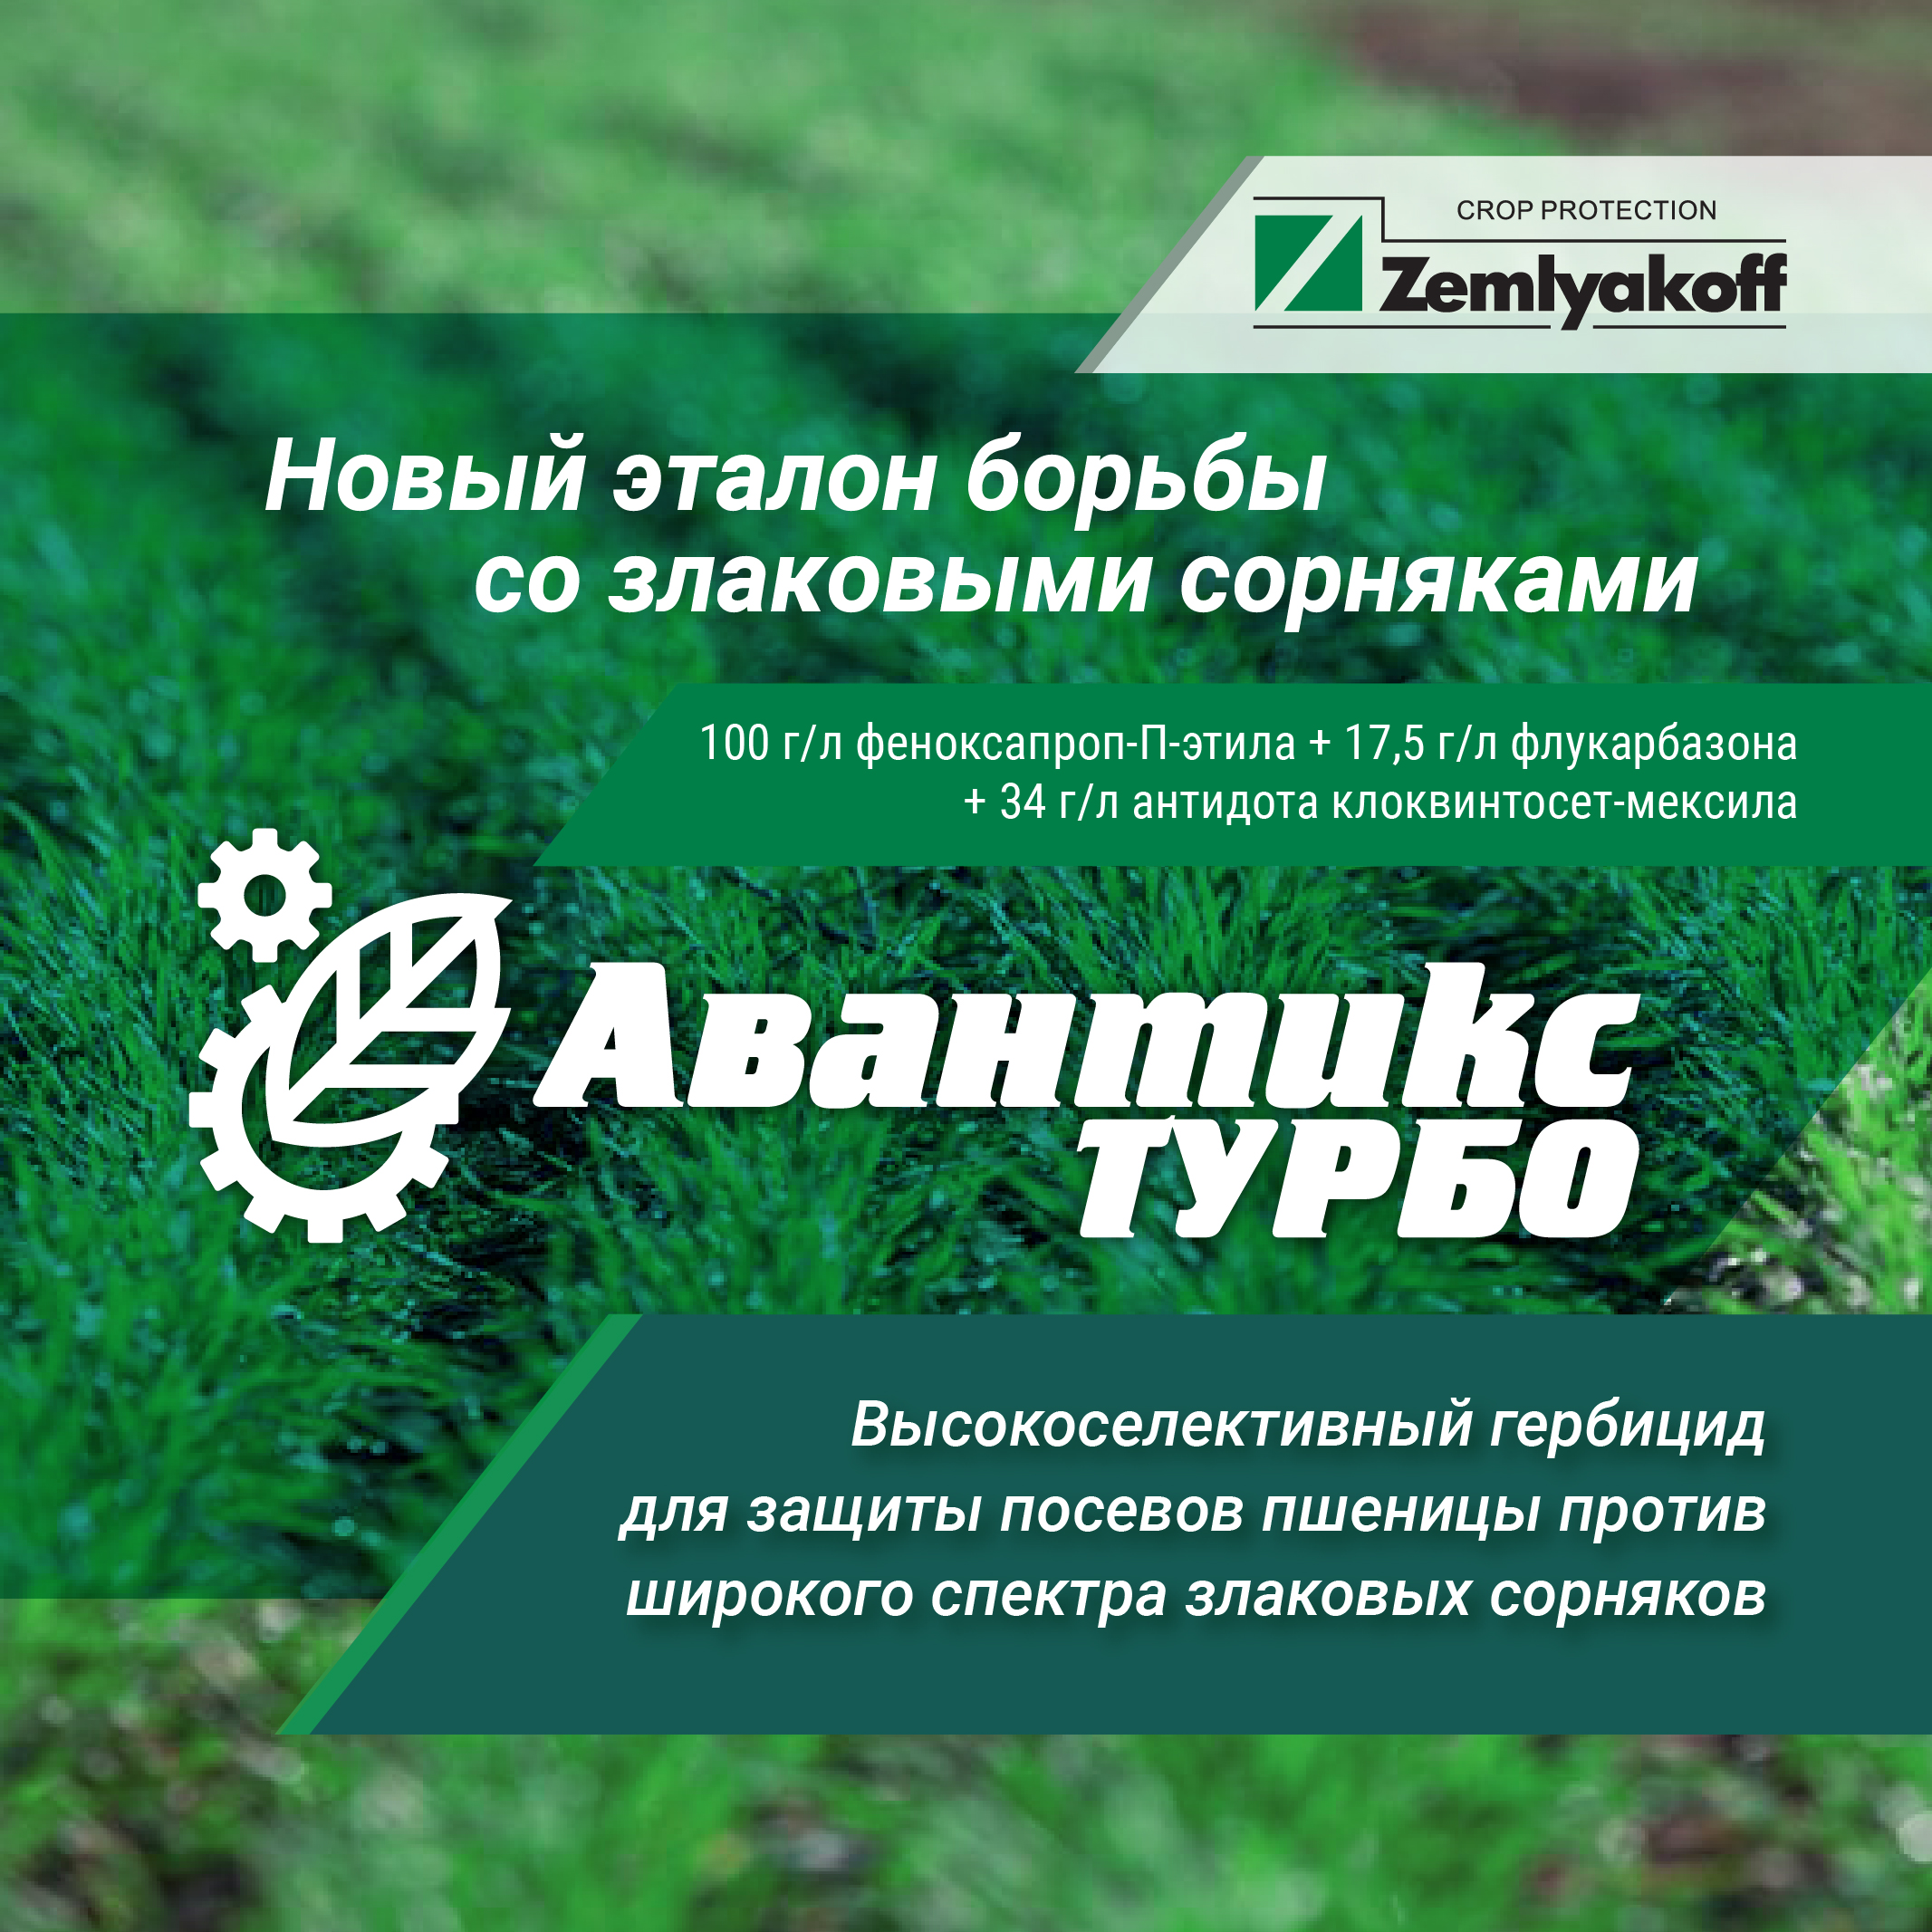 Получил регистрацию новый высокоселективный гербицид для защиты пшеницы от злаковых сорняков Авантикс Турбо